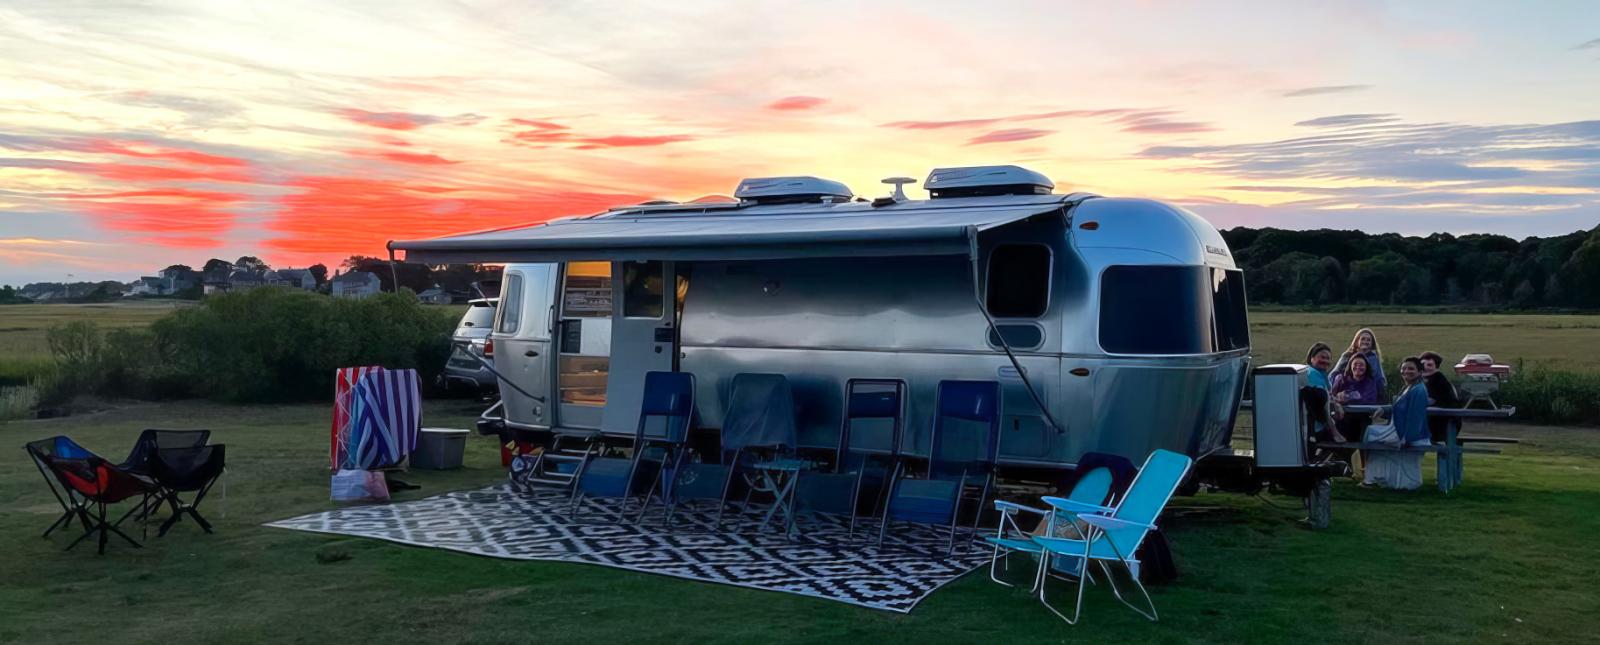 Family camping at Hammonassett State Park (Instagram@adventuresofroytheairstream)